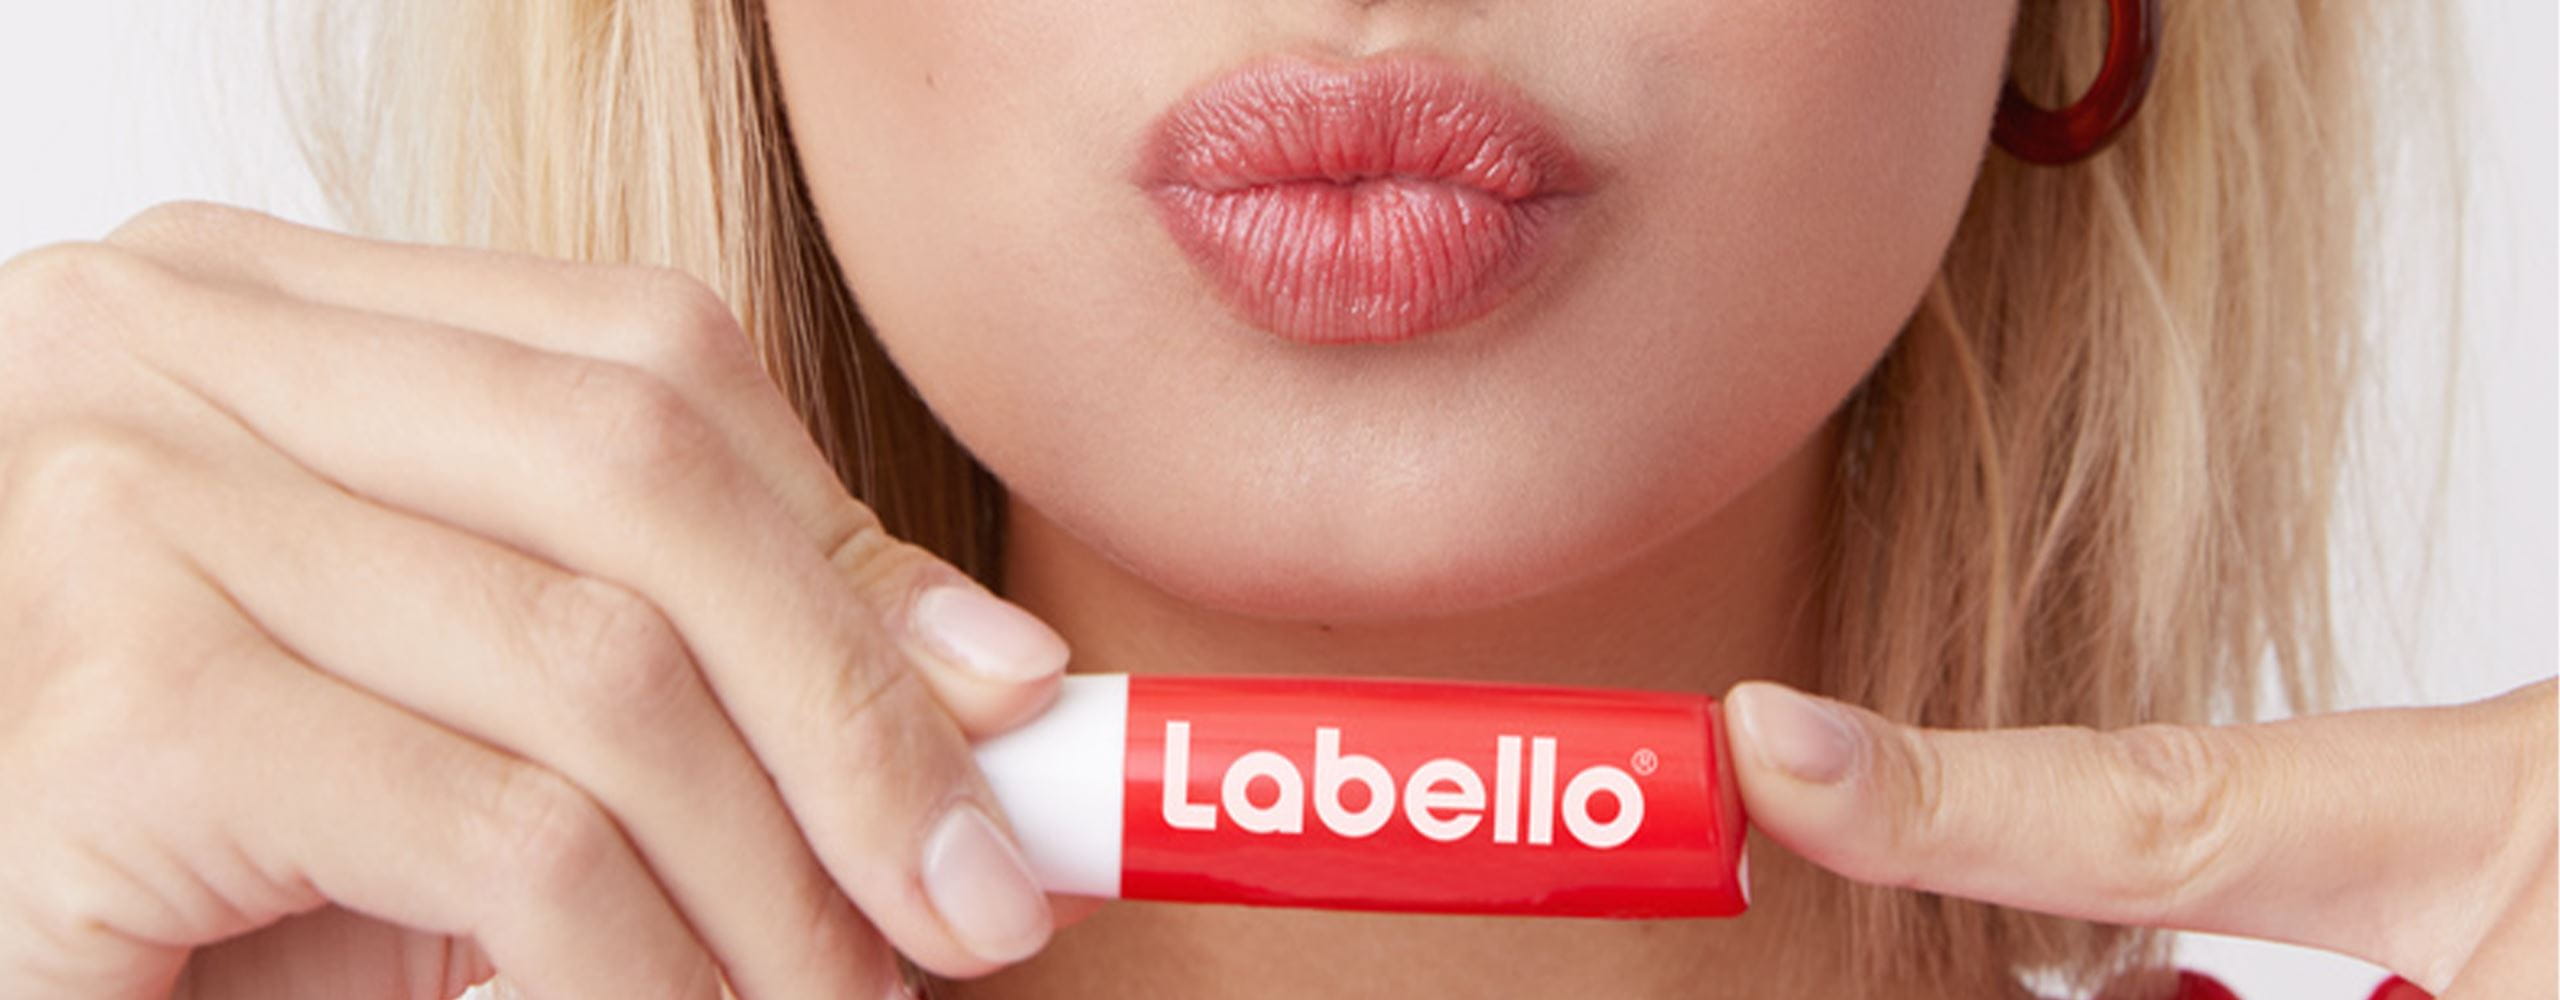 Labello I Lippenwissen I Trockene Lippen und Lippenpflege